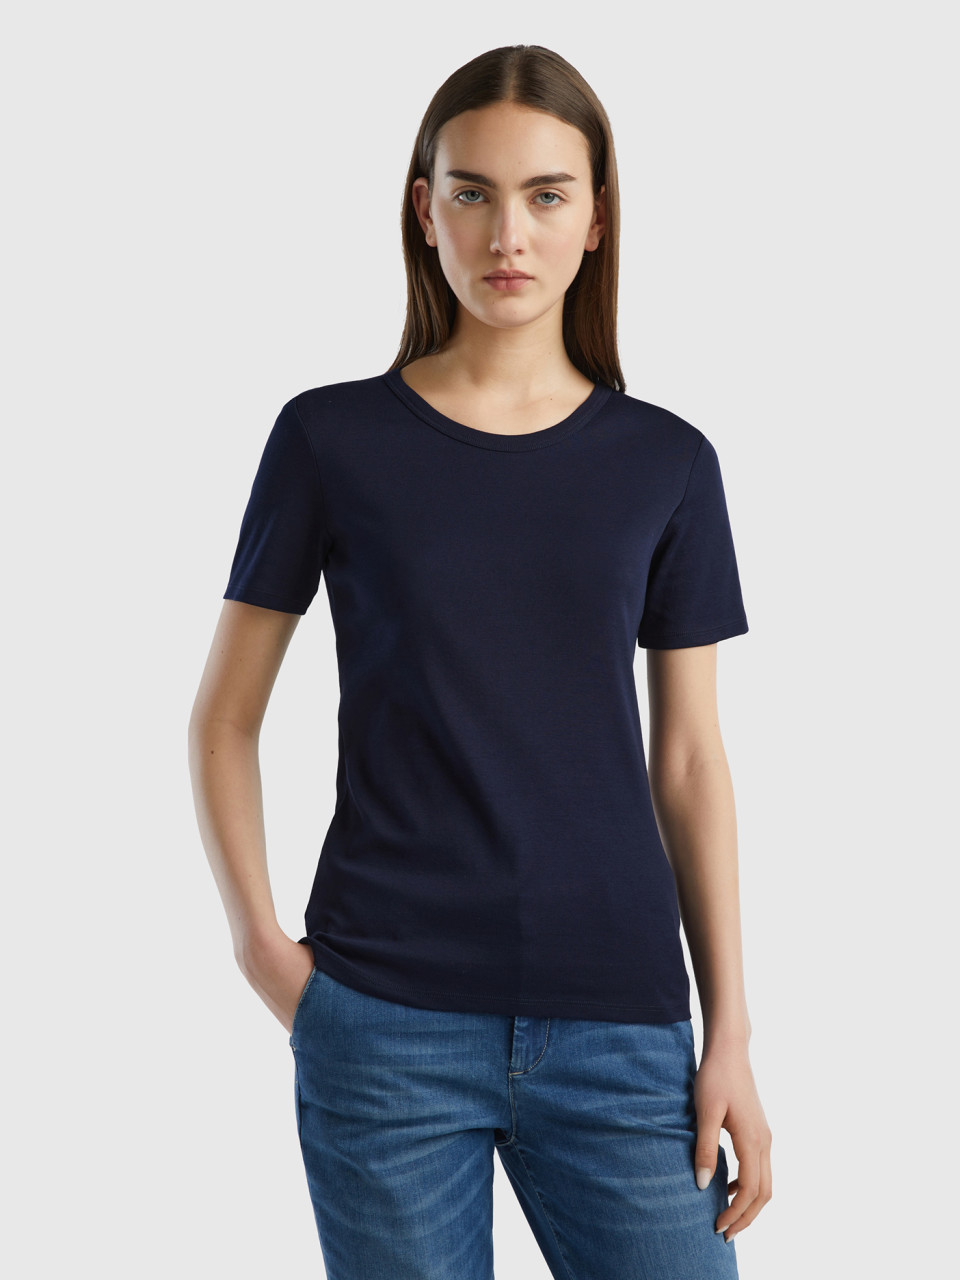 Benetton, Long Fiber Cotton T-shirt, Dark Blue, Women